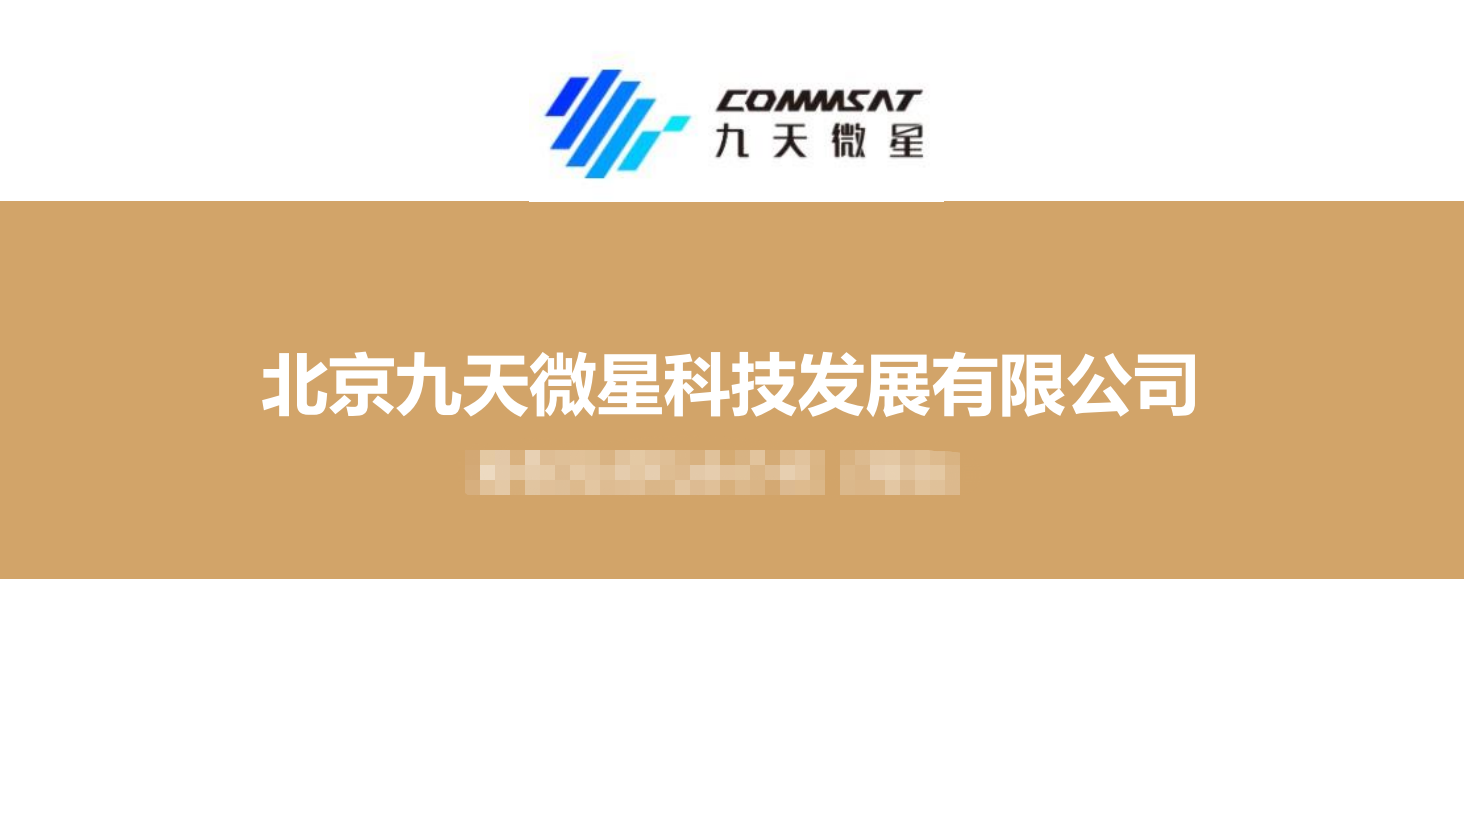 北京九天微星科技发展有限公司 -- 卫星整星及载荷制造商，卫星通信全产业链多点布局